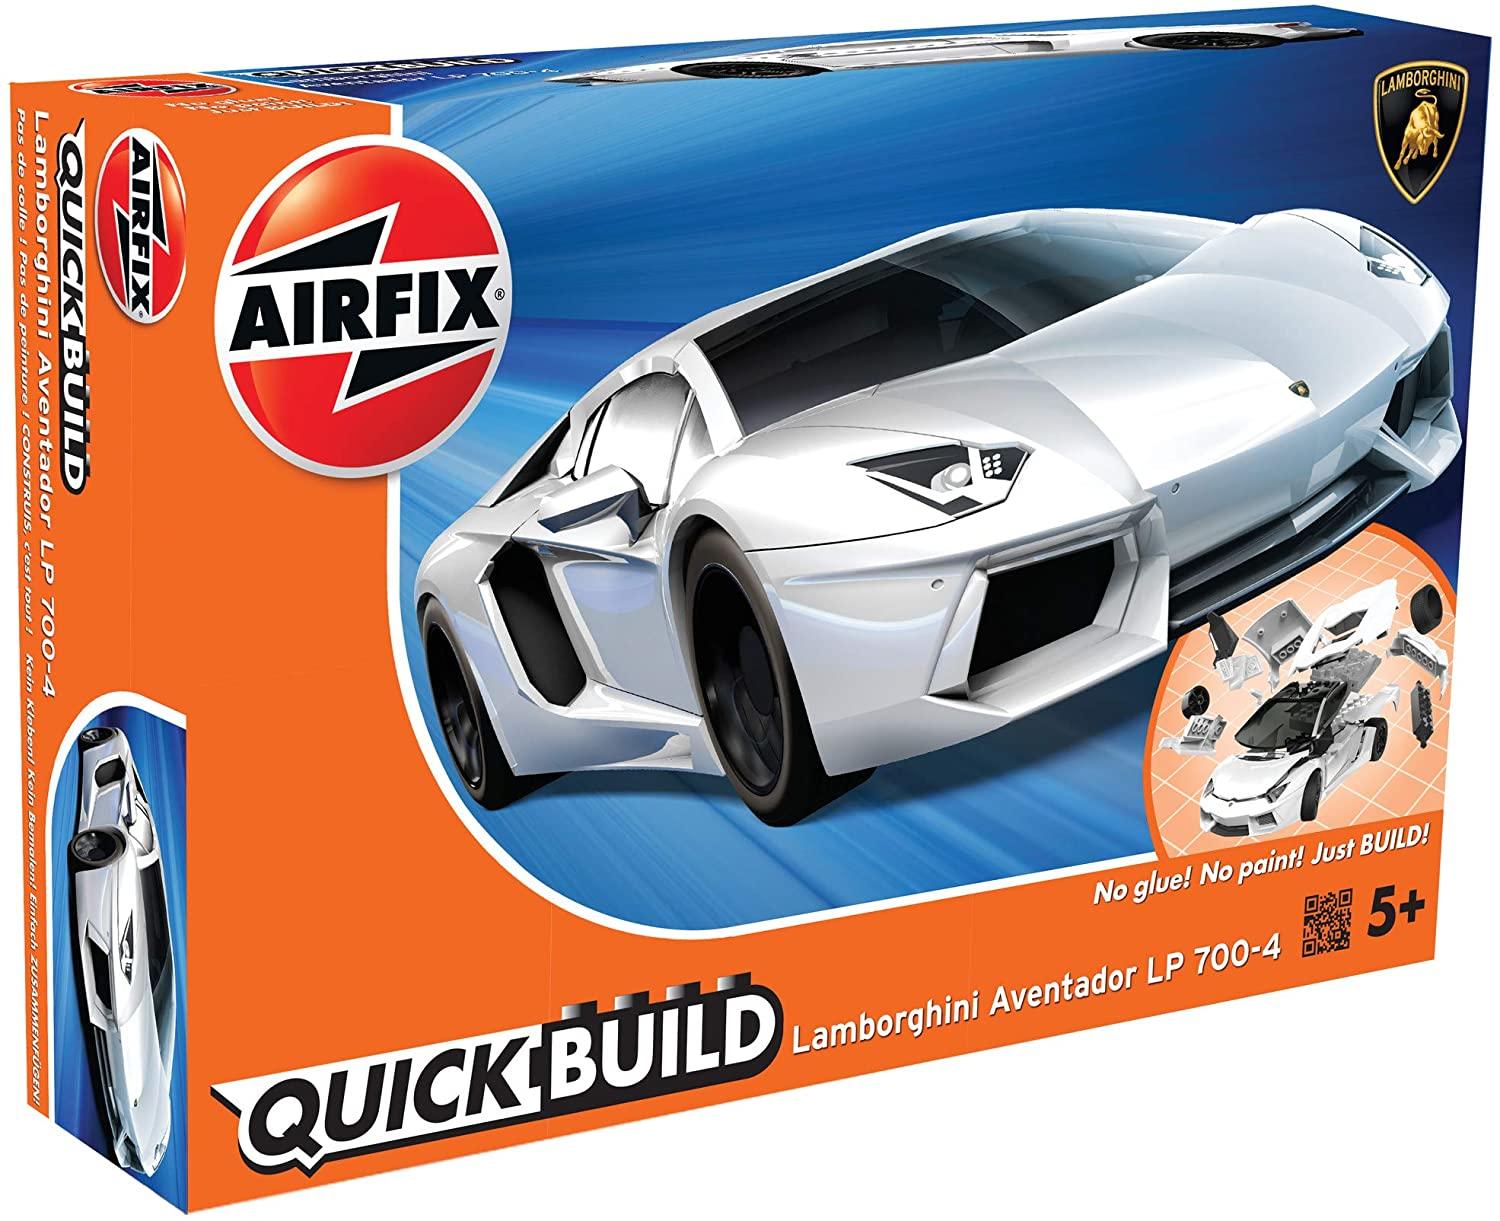 Airfix Quickbuild box for Lamborghini